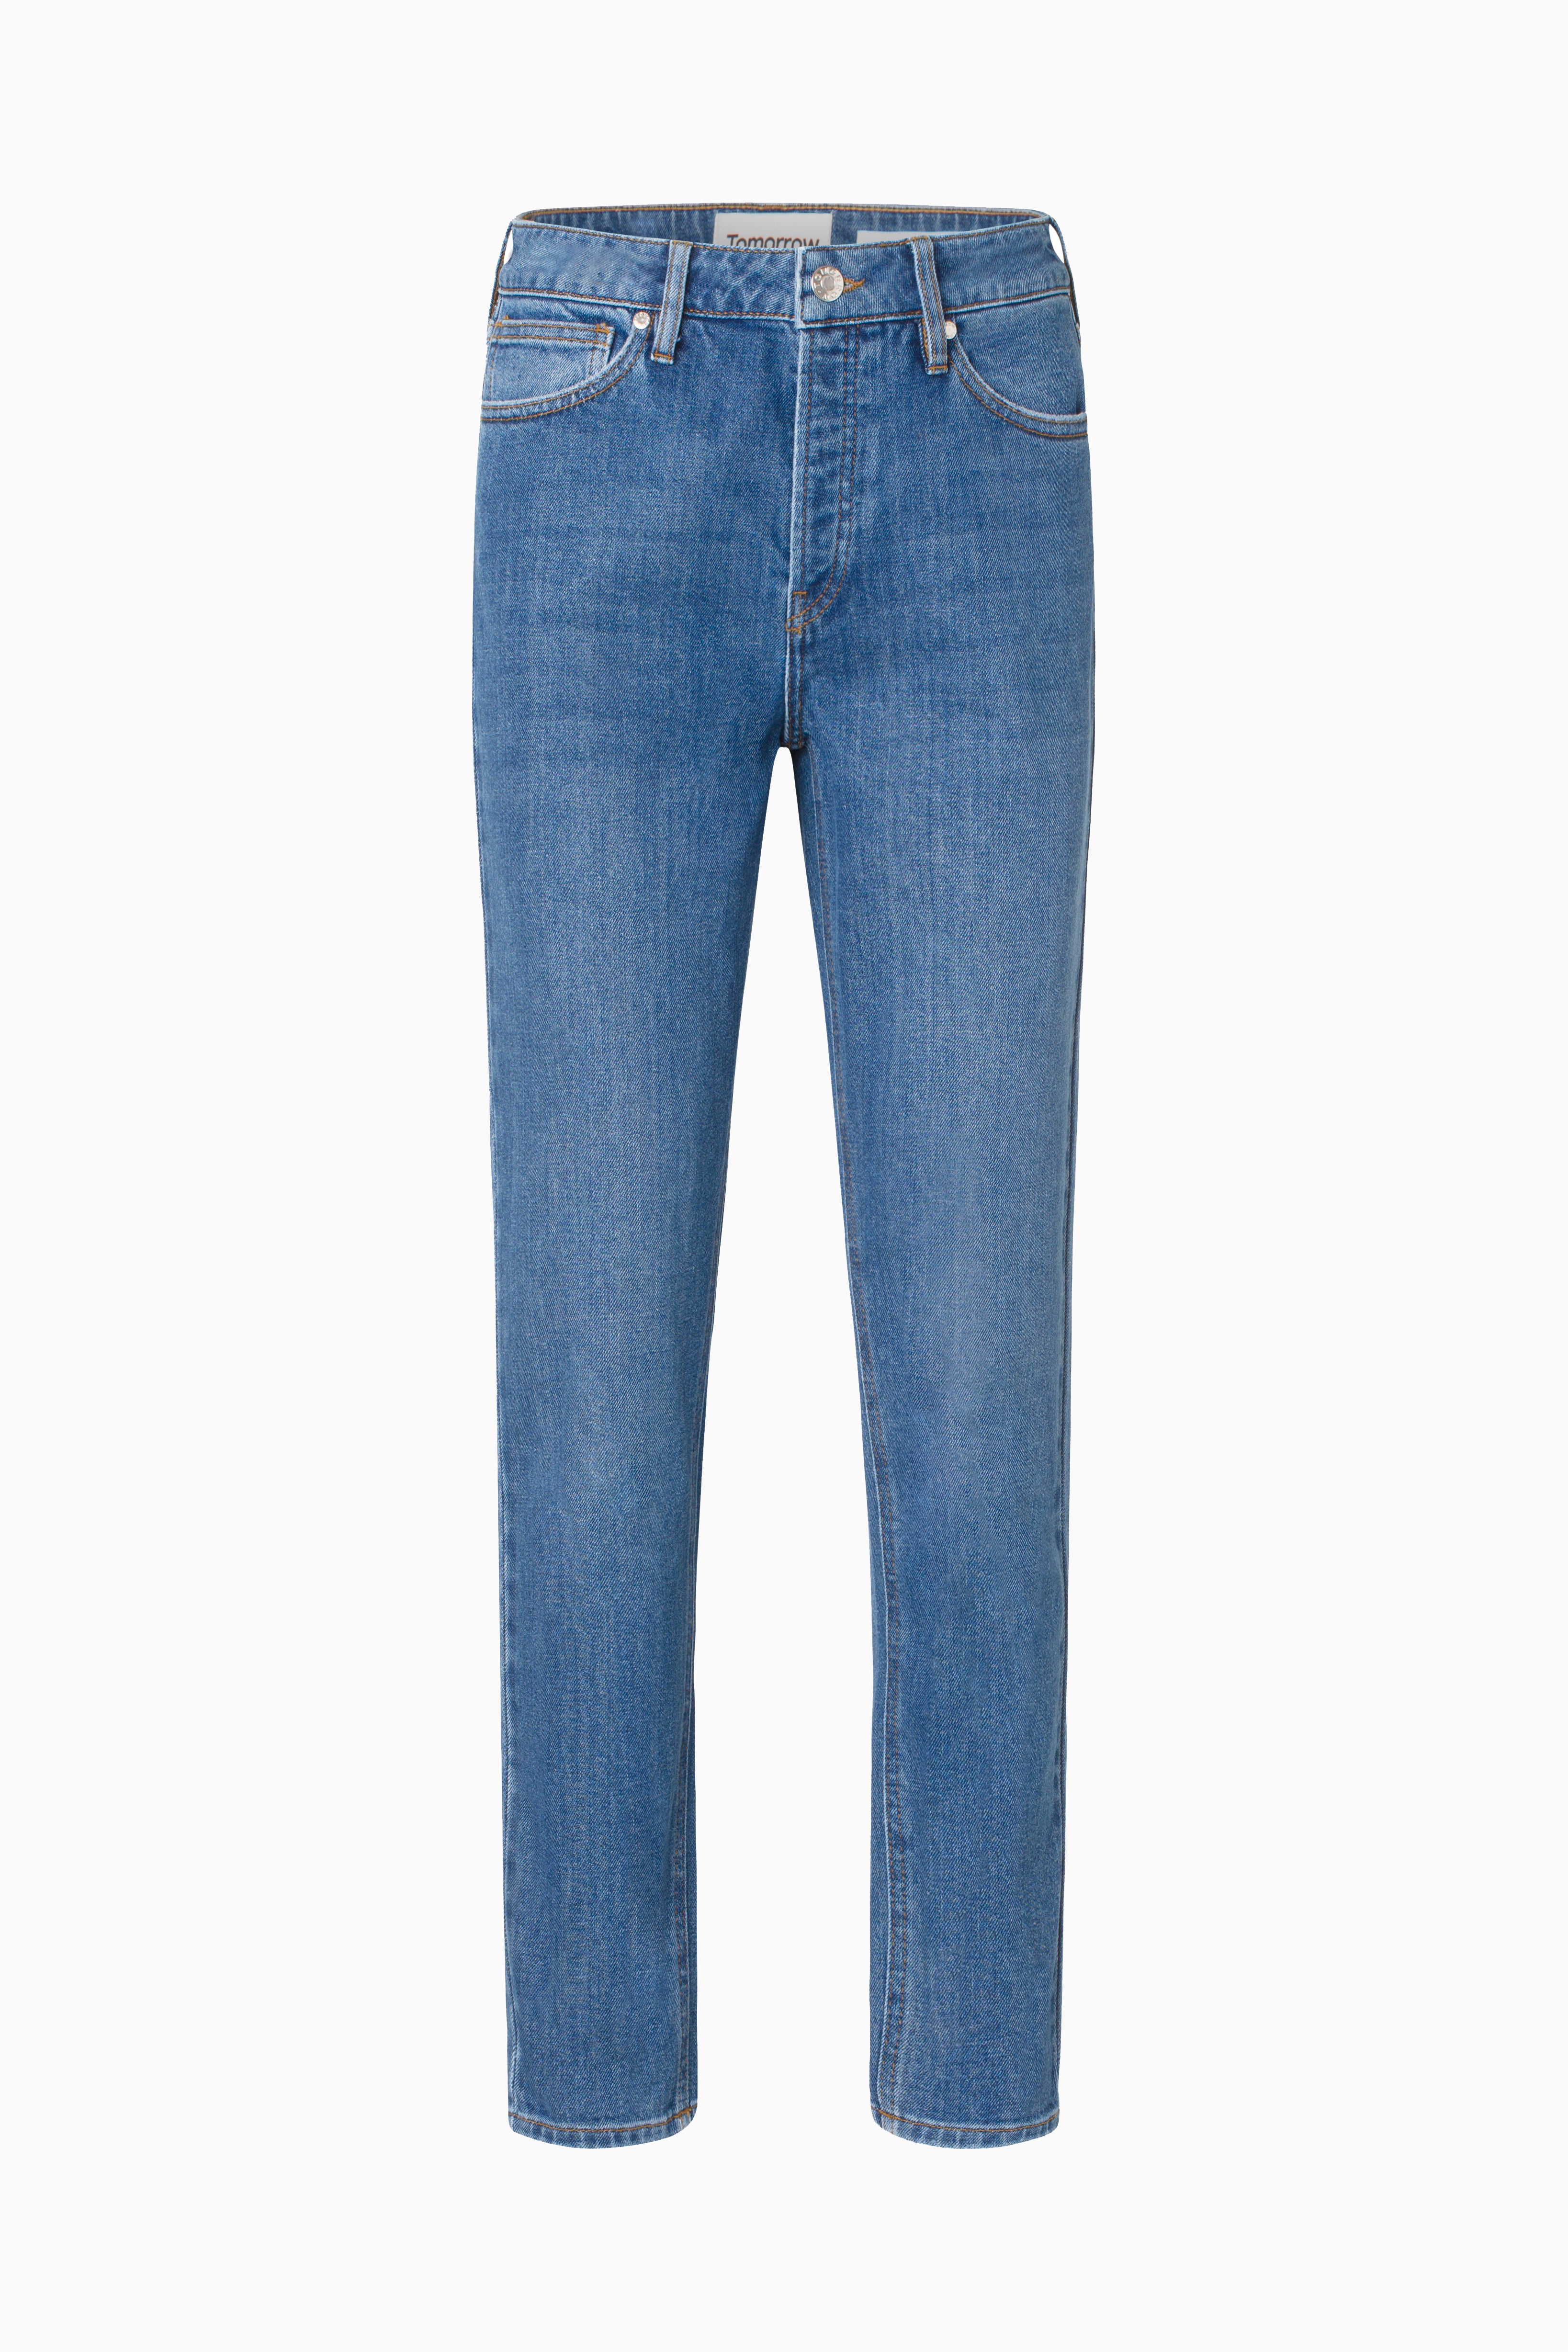 Tomorrow TRW-Hepburn Jeans Wash Dark Iowa Jeans & Pants 51 Denim Blue